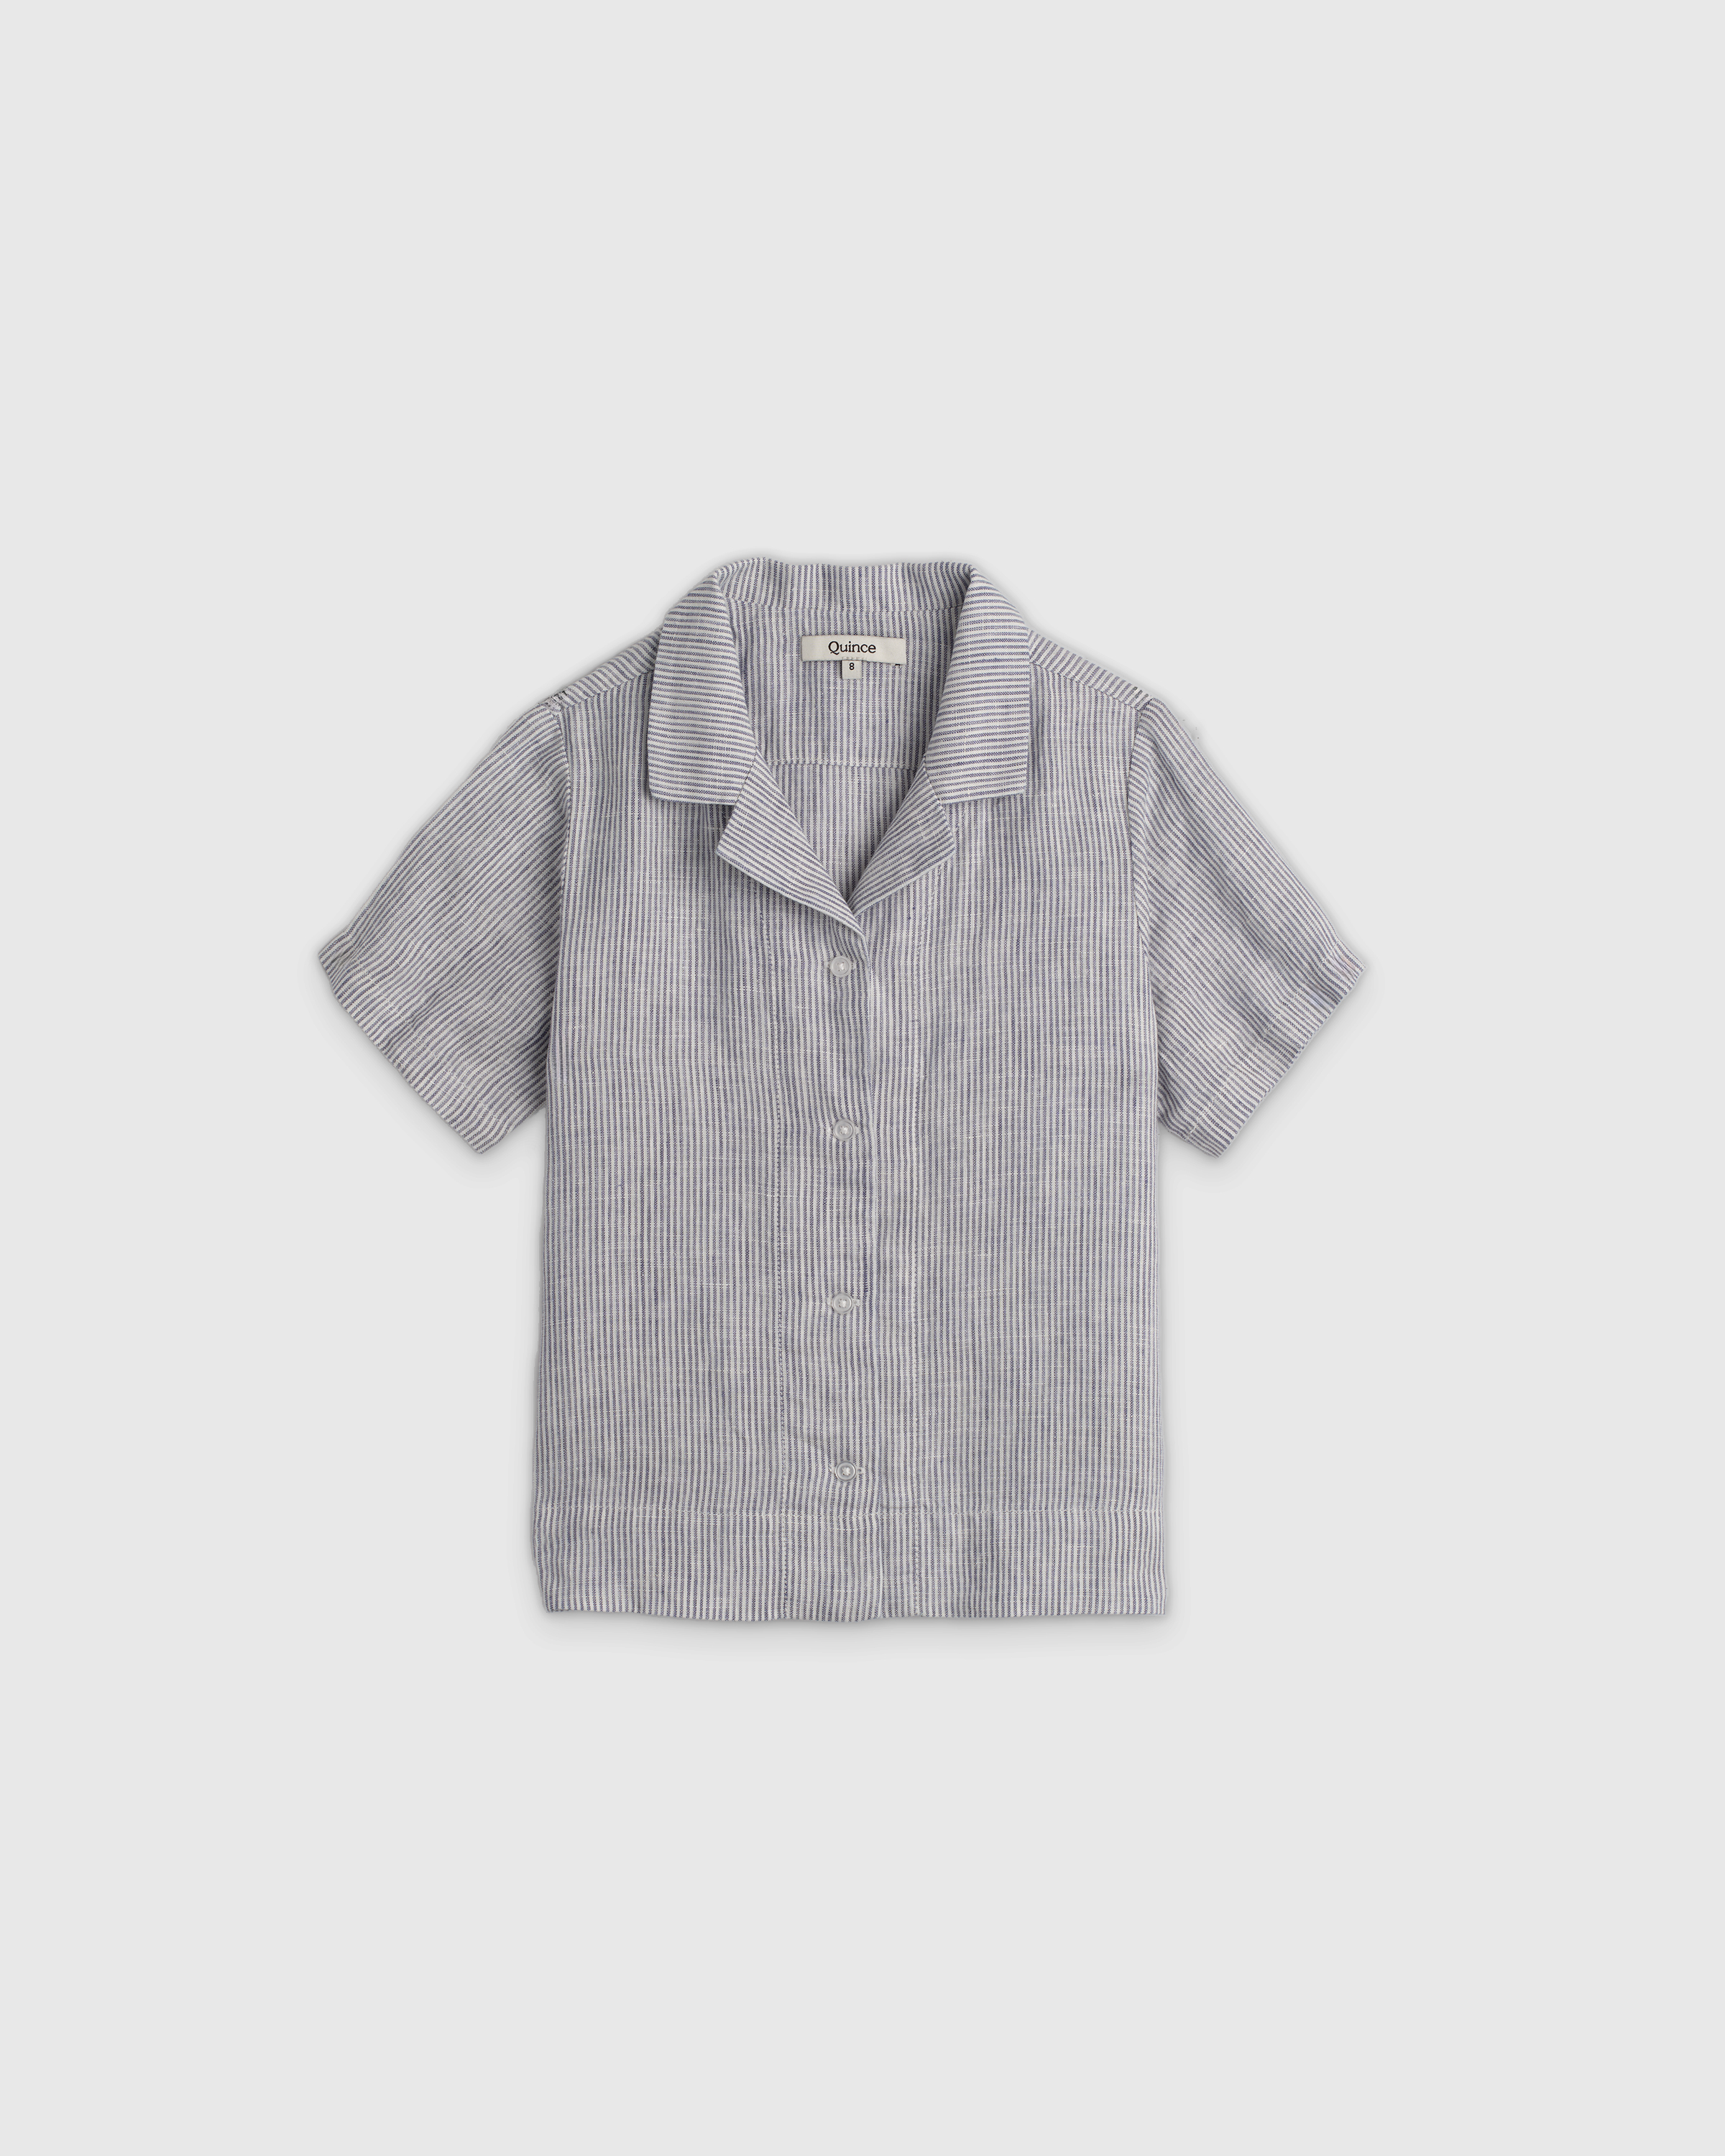 Shop Quince 100% European Linen Short Sleeve Camp Shirt In Blue Pinstripe